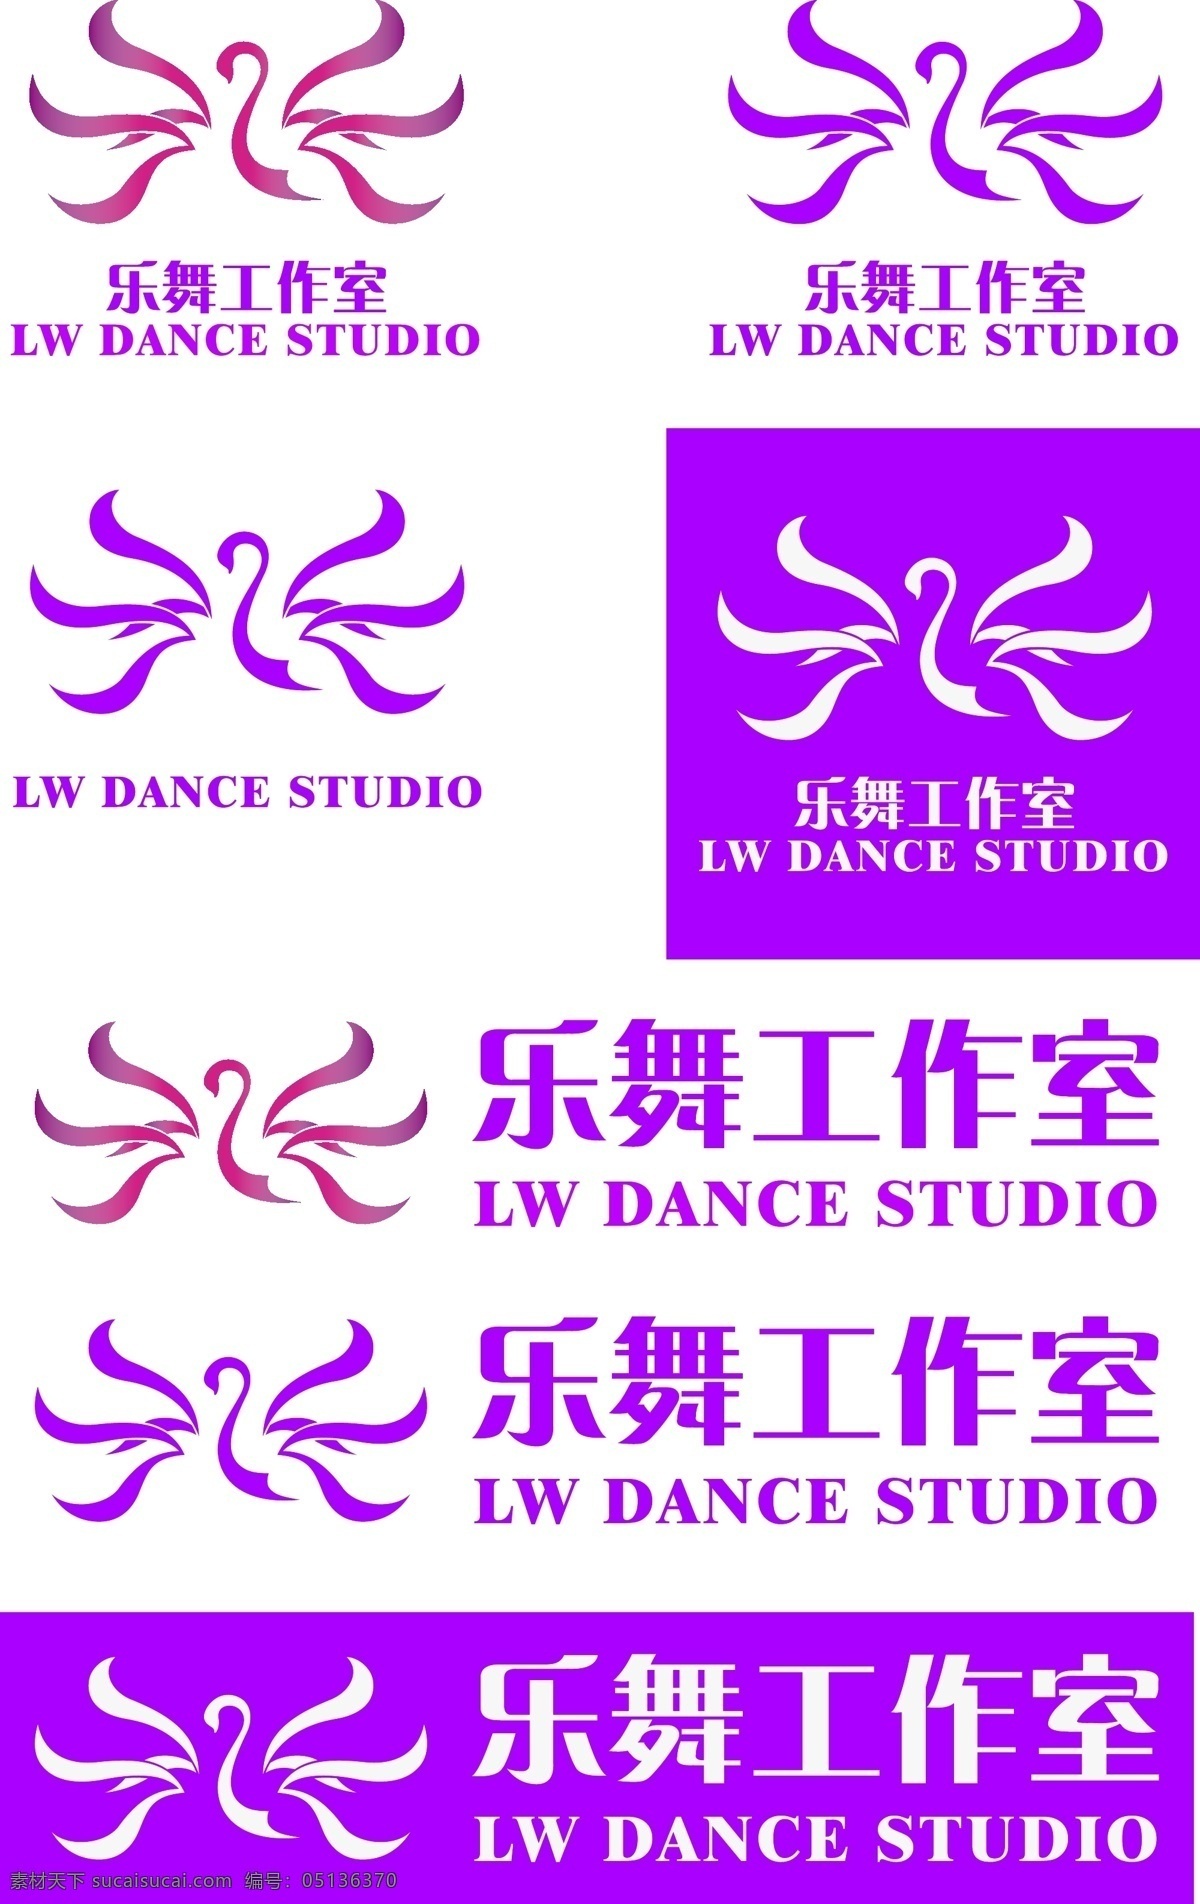 乐舞 舞蹈 工作室 天鹅 桃红色 logo 舞蹈工作室 标志设计 标识设计 logo设计 女性化 白色